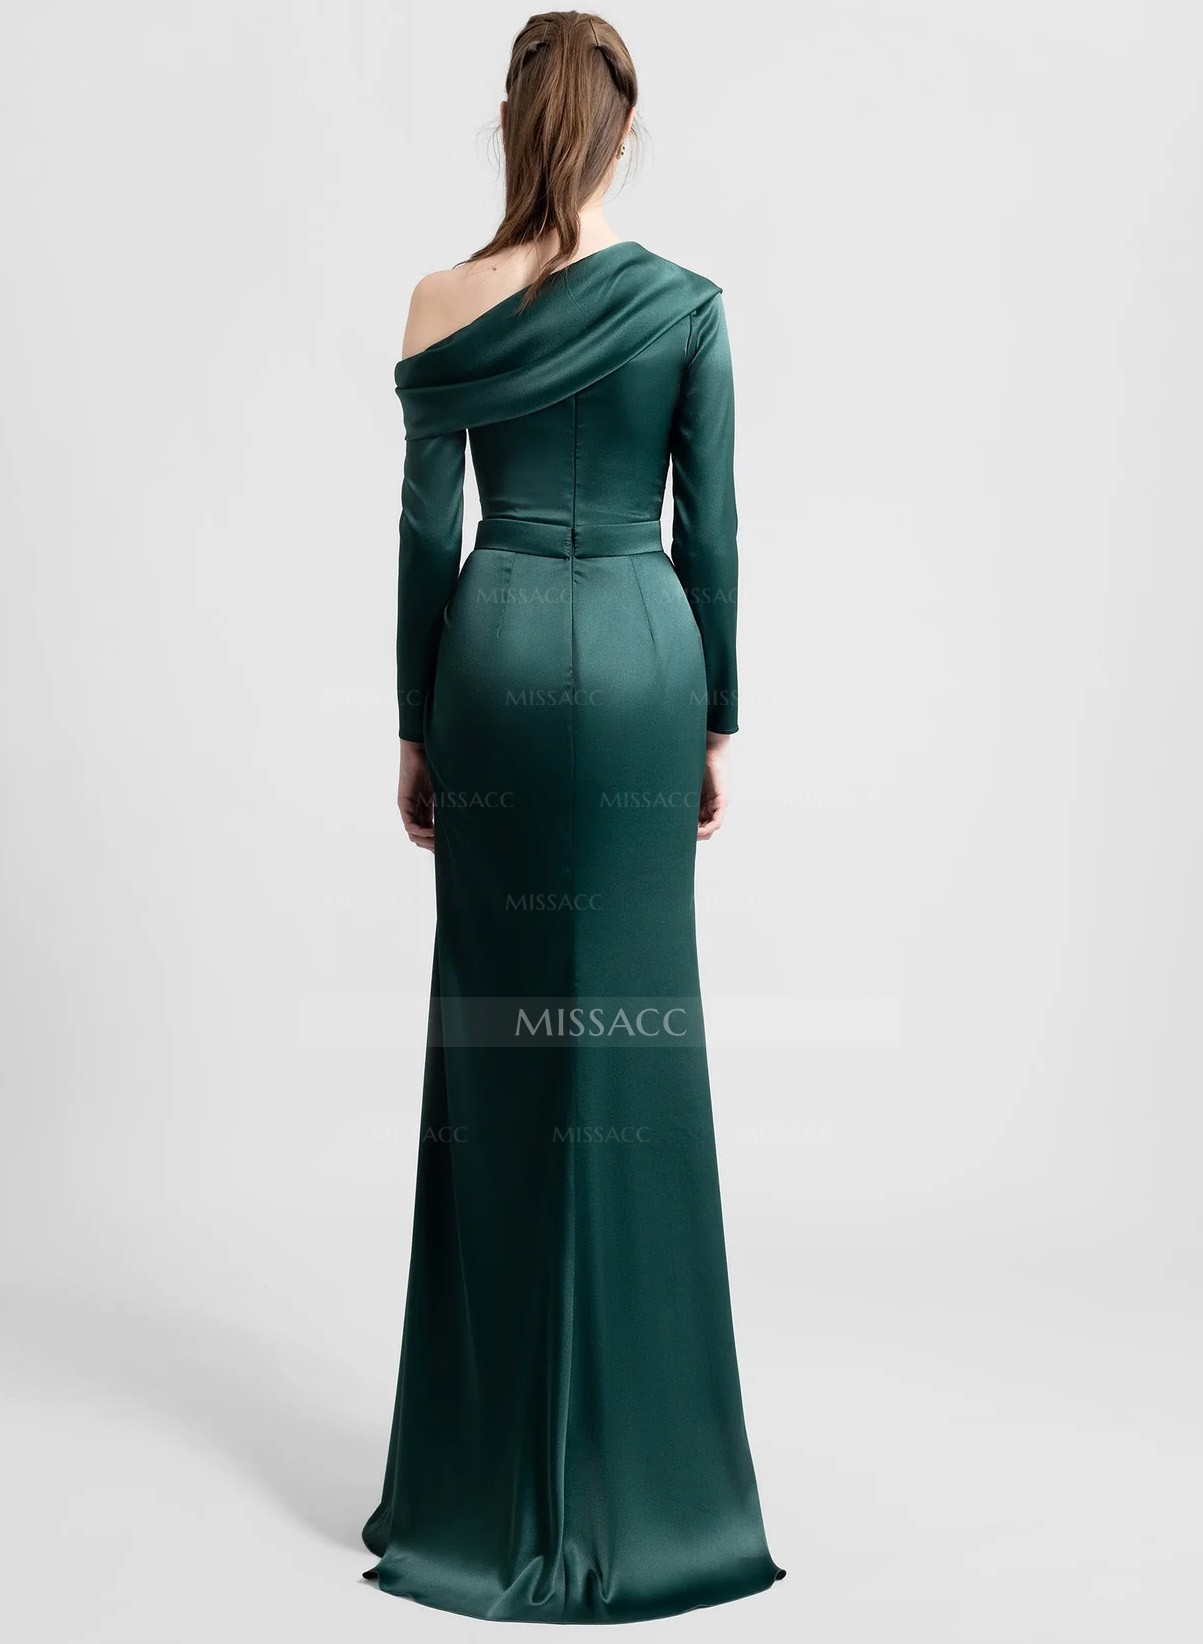 Elegant Long Sleeves Green Satin Evening Dresses With Cold Shoulder